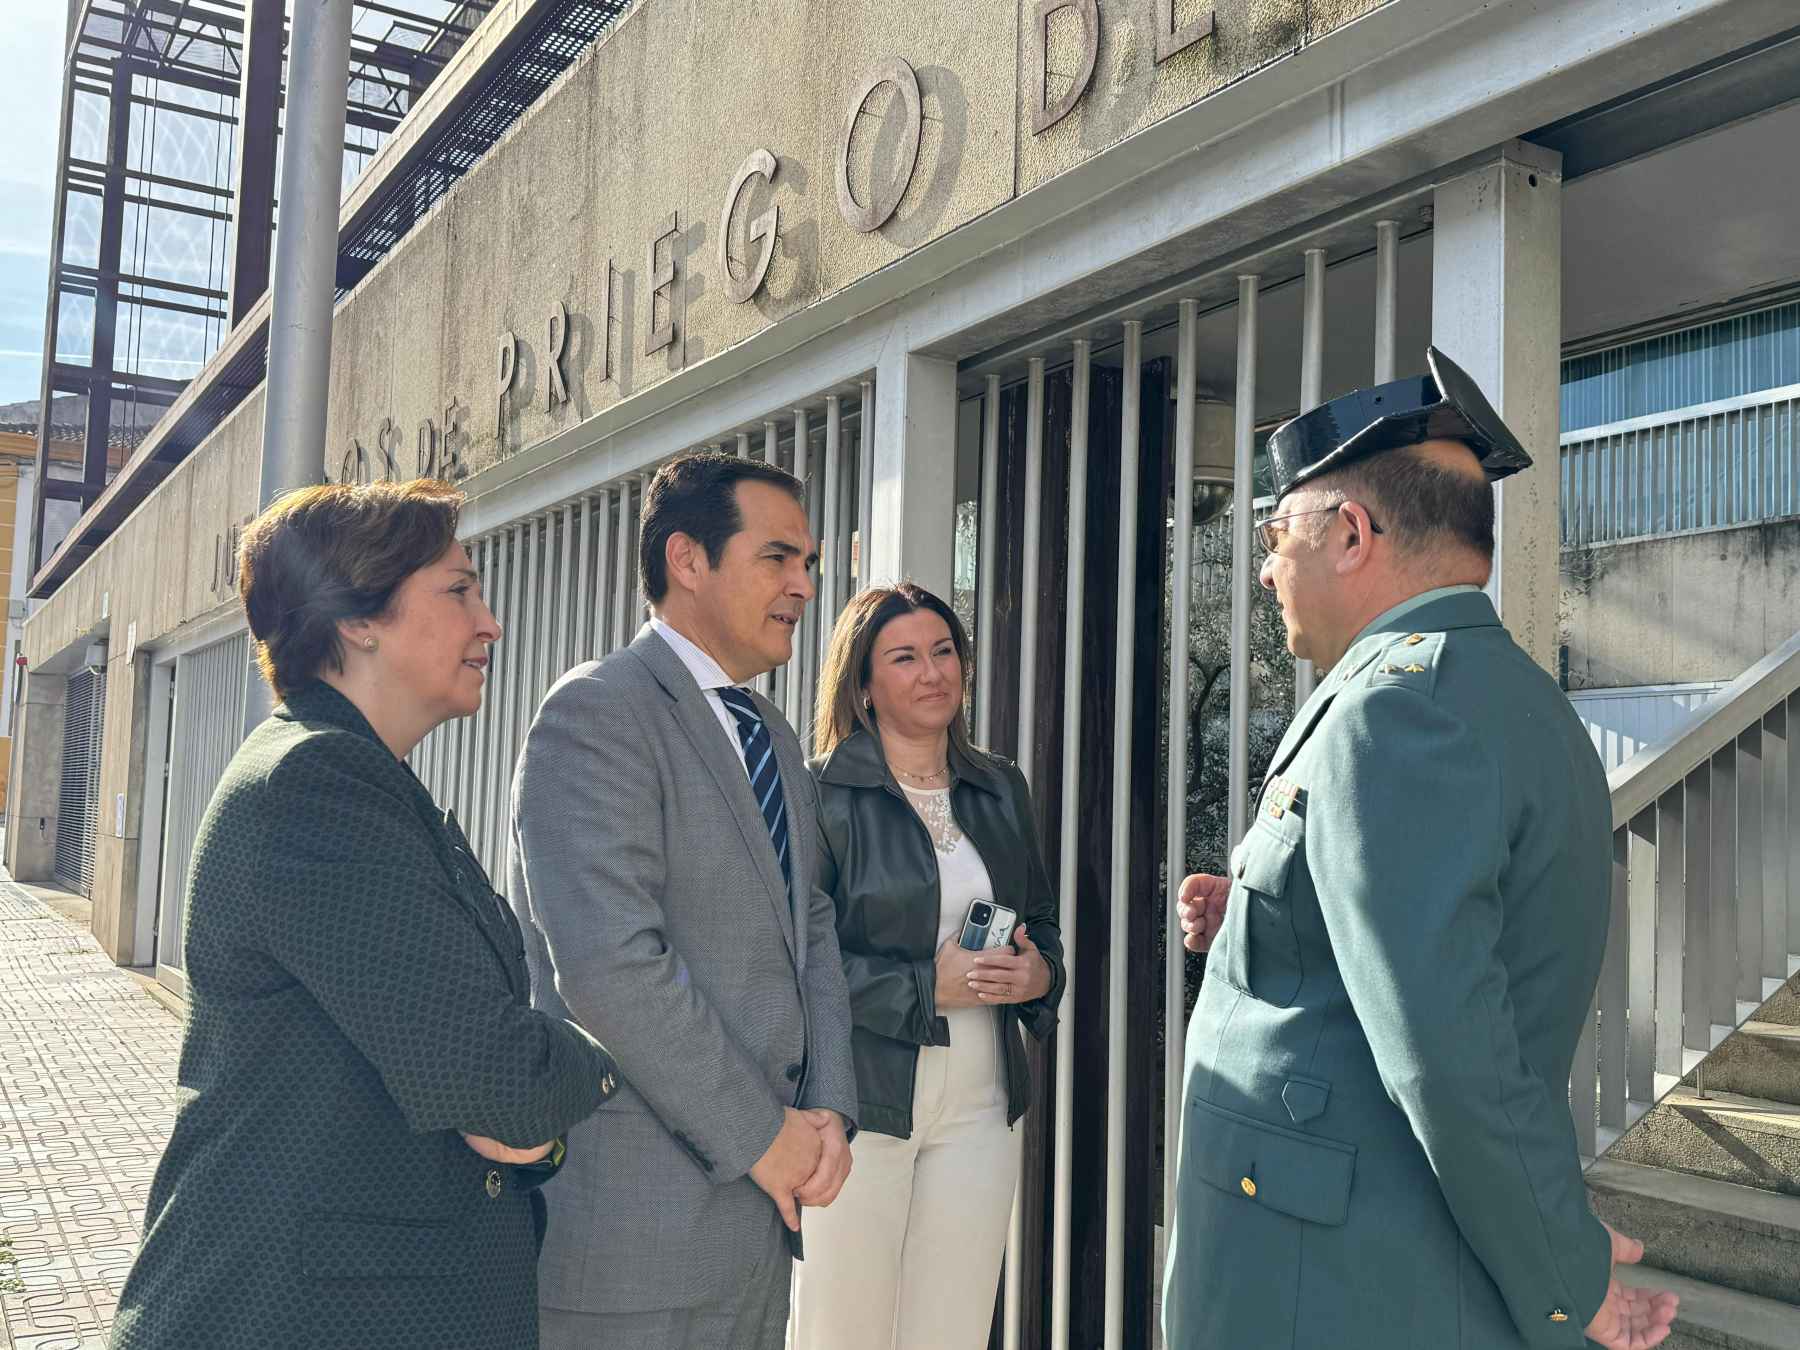 Nieto, junto a Corredera y López, en el acceso a la sede judicial prieguense, saludando al jefe de puesto de la Guardia Civil.